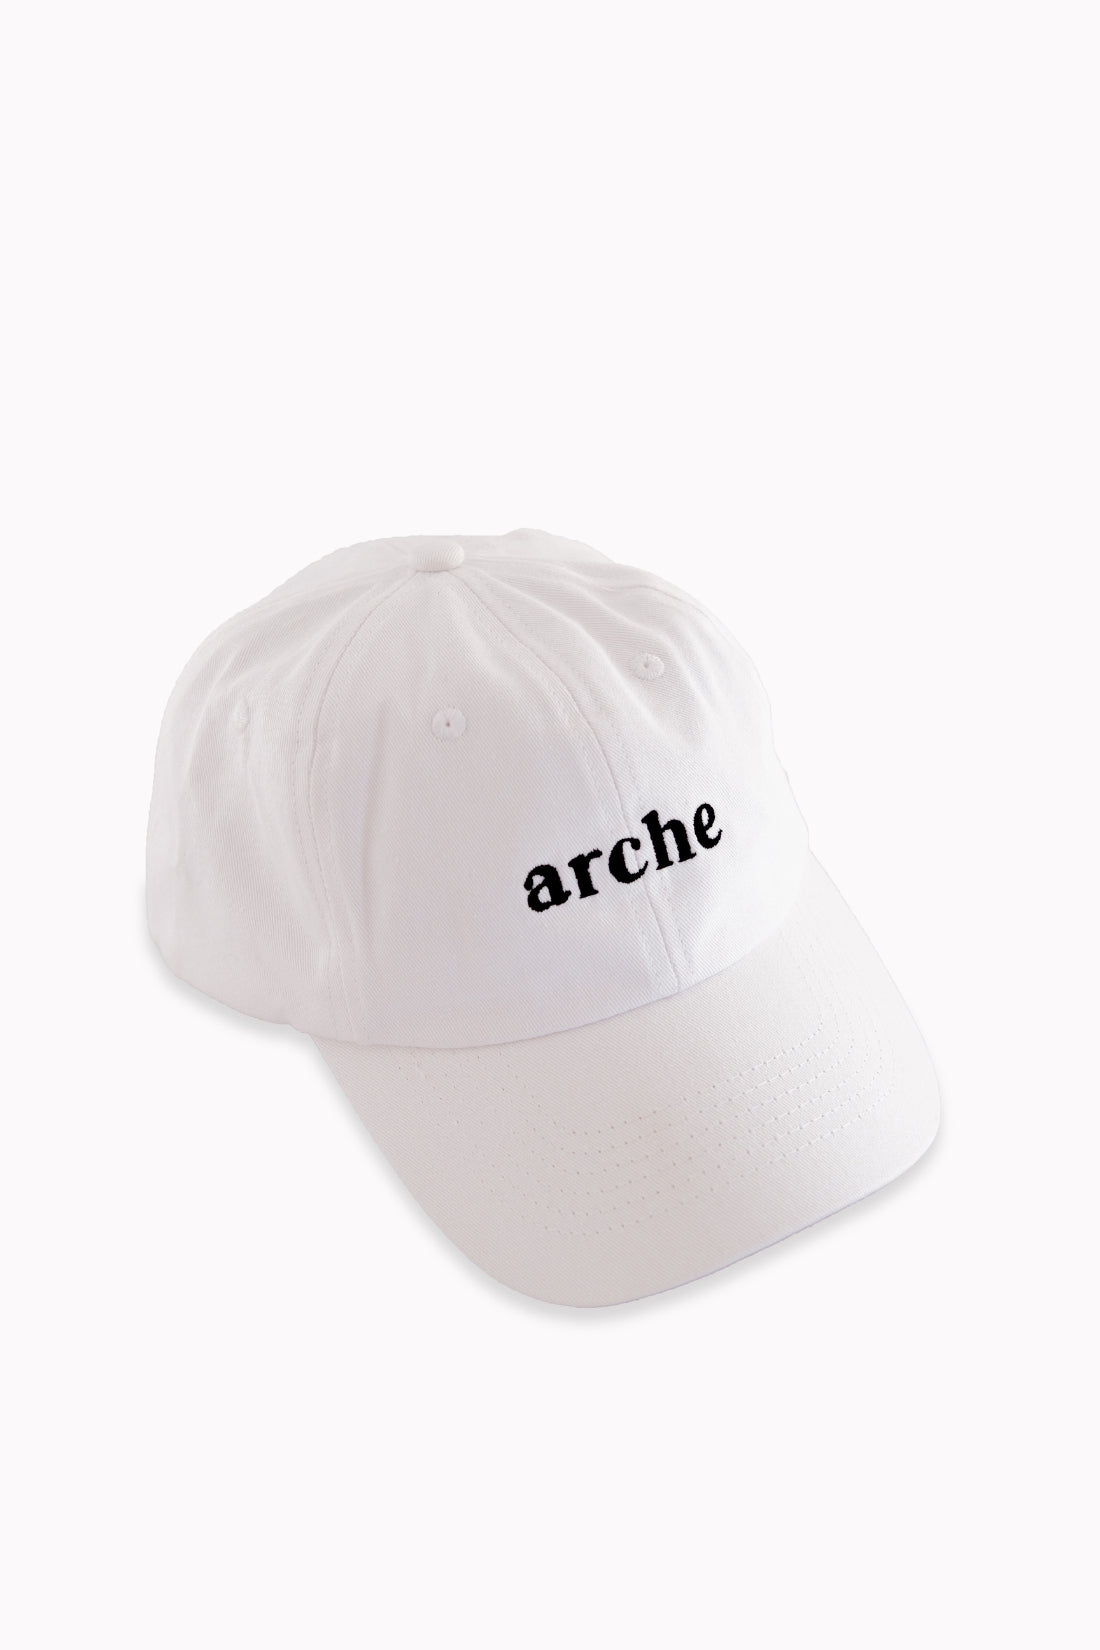 Arche Cap | White